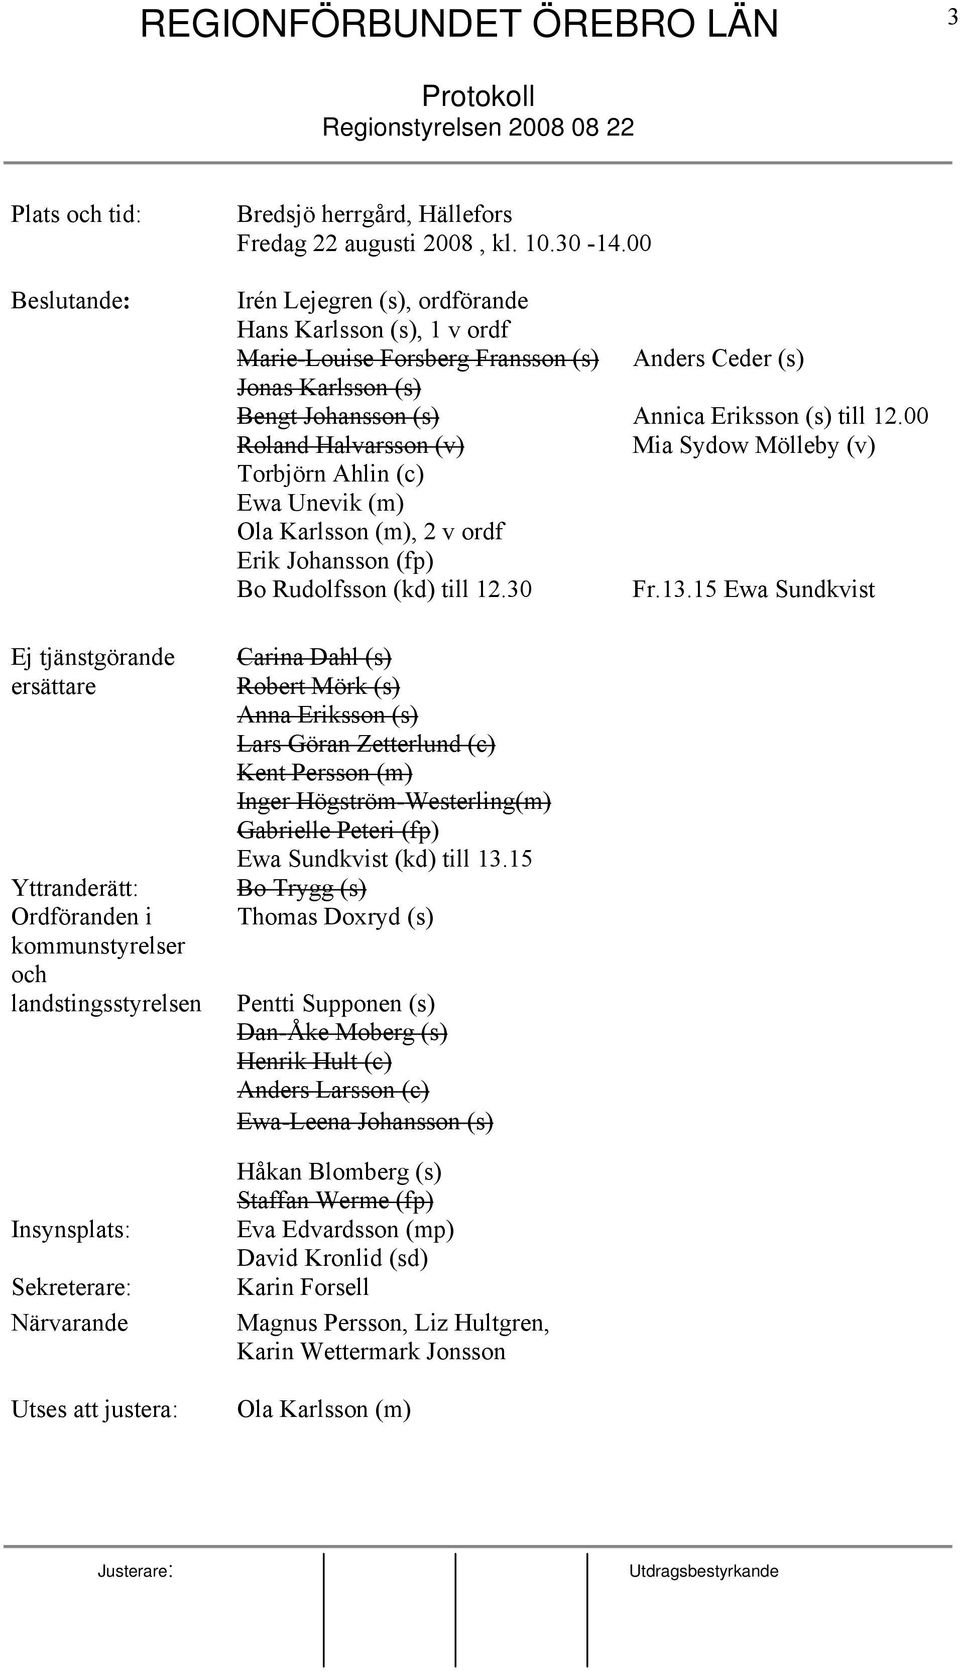 00 Irén Lejegren (s), ordförande Hans Karlsson (s), 1 v ordf Marie-Louise Forsberg Fransson (s) Anders Ceder (s) Jonas Karlsson (s) Bengt Johansson (s) Annica Eriksson (s) till 12.